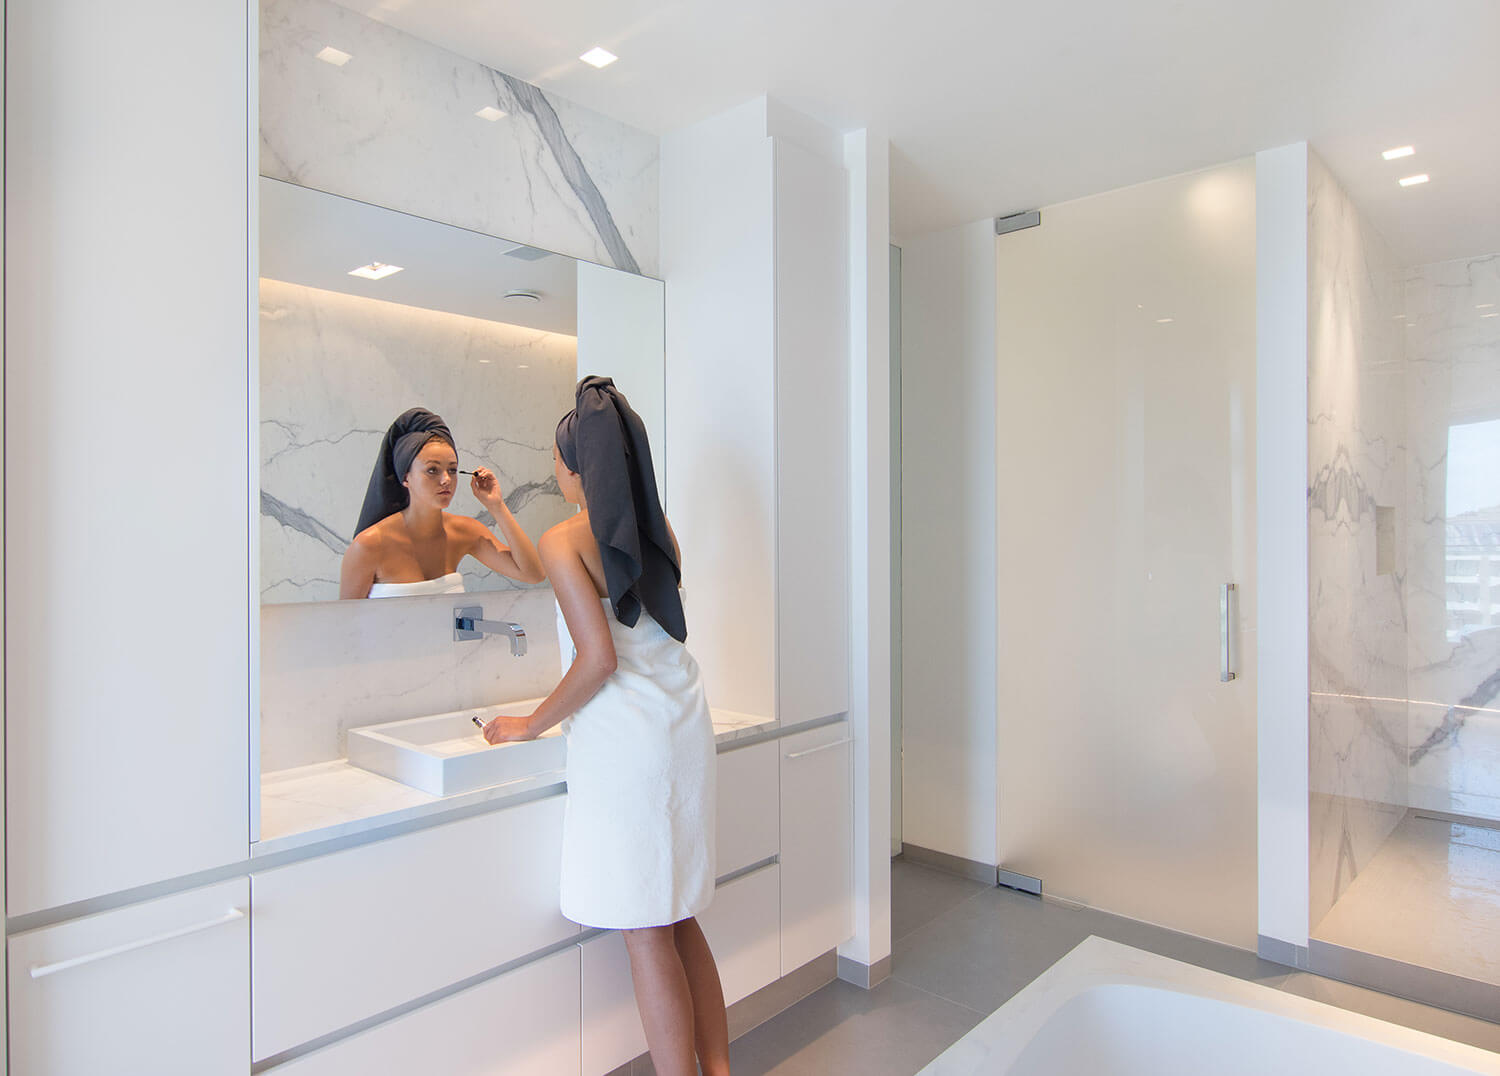 foto van dame die zich aan het opmaken is in een moderne badkamer met keramische tegels die de indruk van marmer geven.